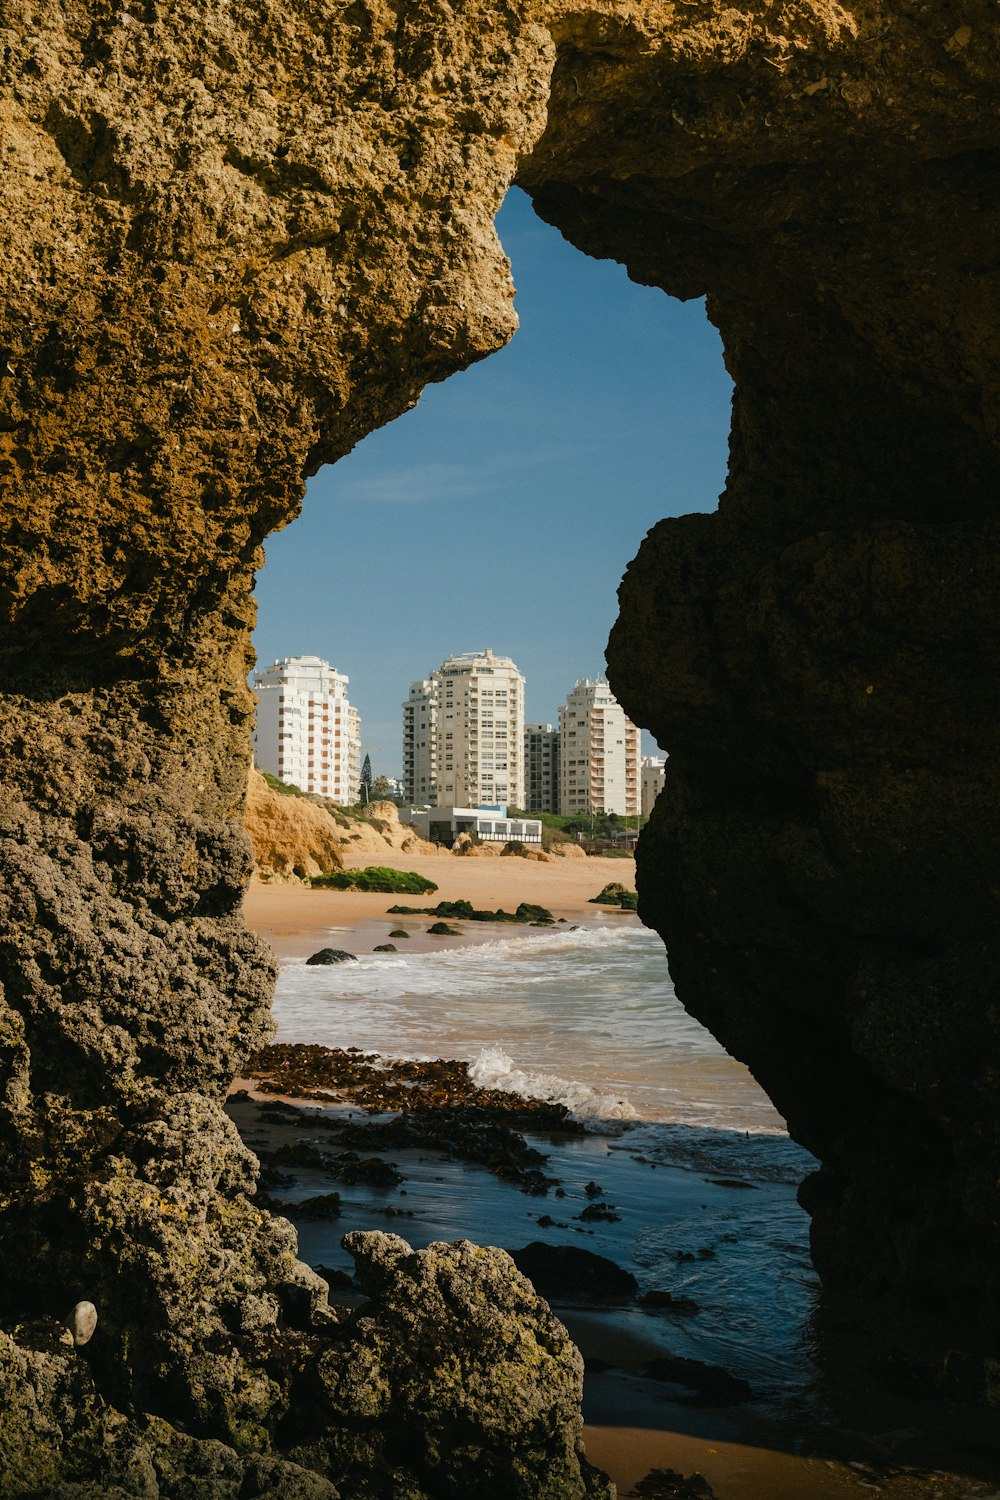 a view of a beach through a hole in a rock